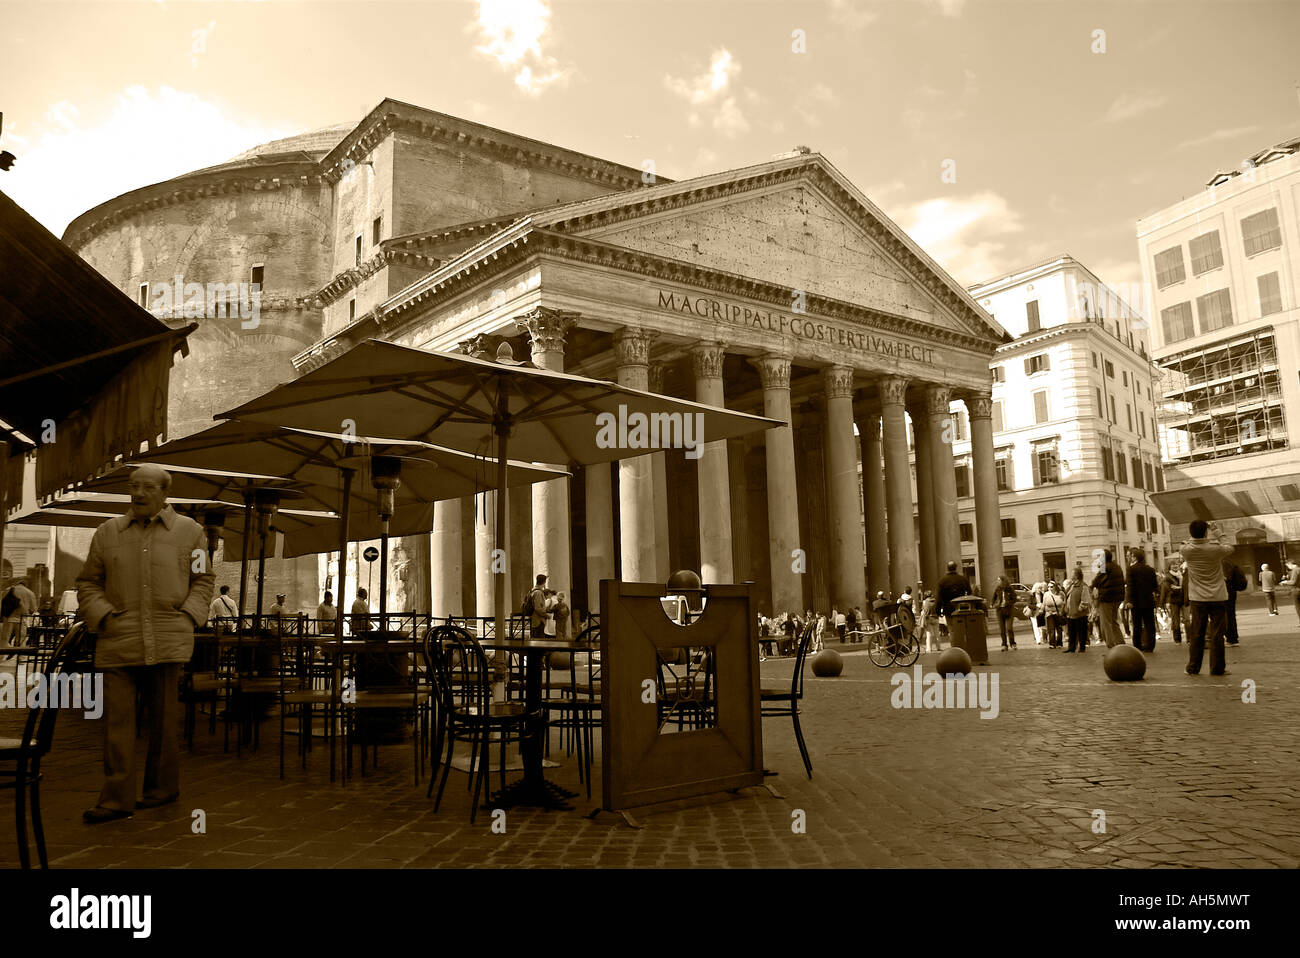 Roma Italia il famoso Pantheon il tempio di tutti gli dèi vista sul cortile passato Tavoli da Pranzo Foto Stock